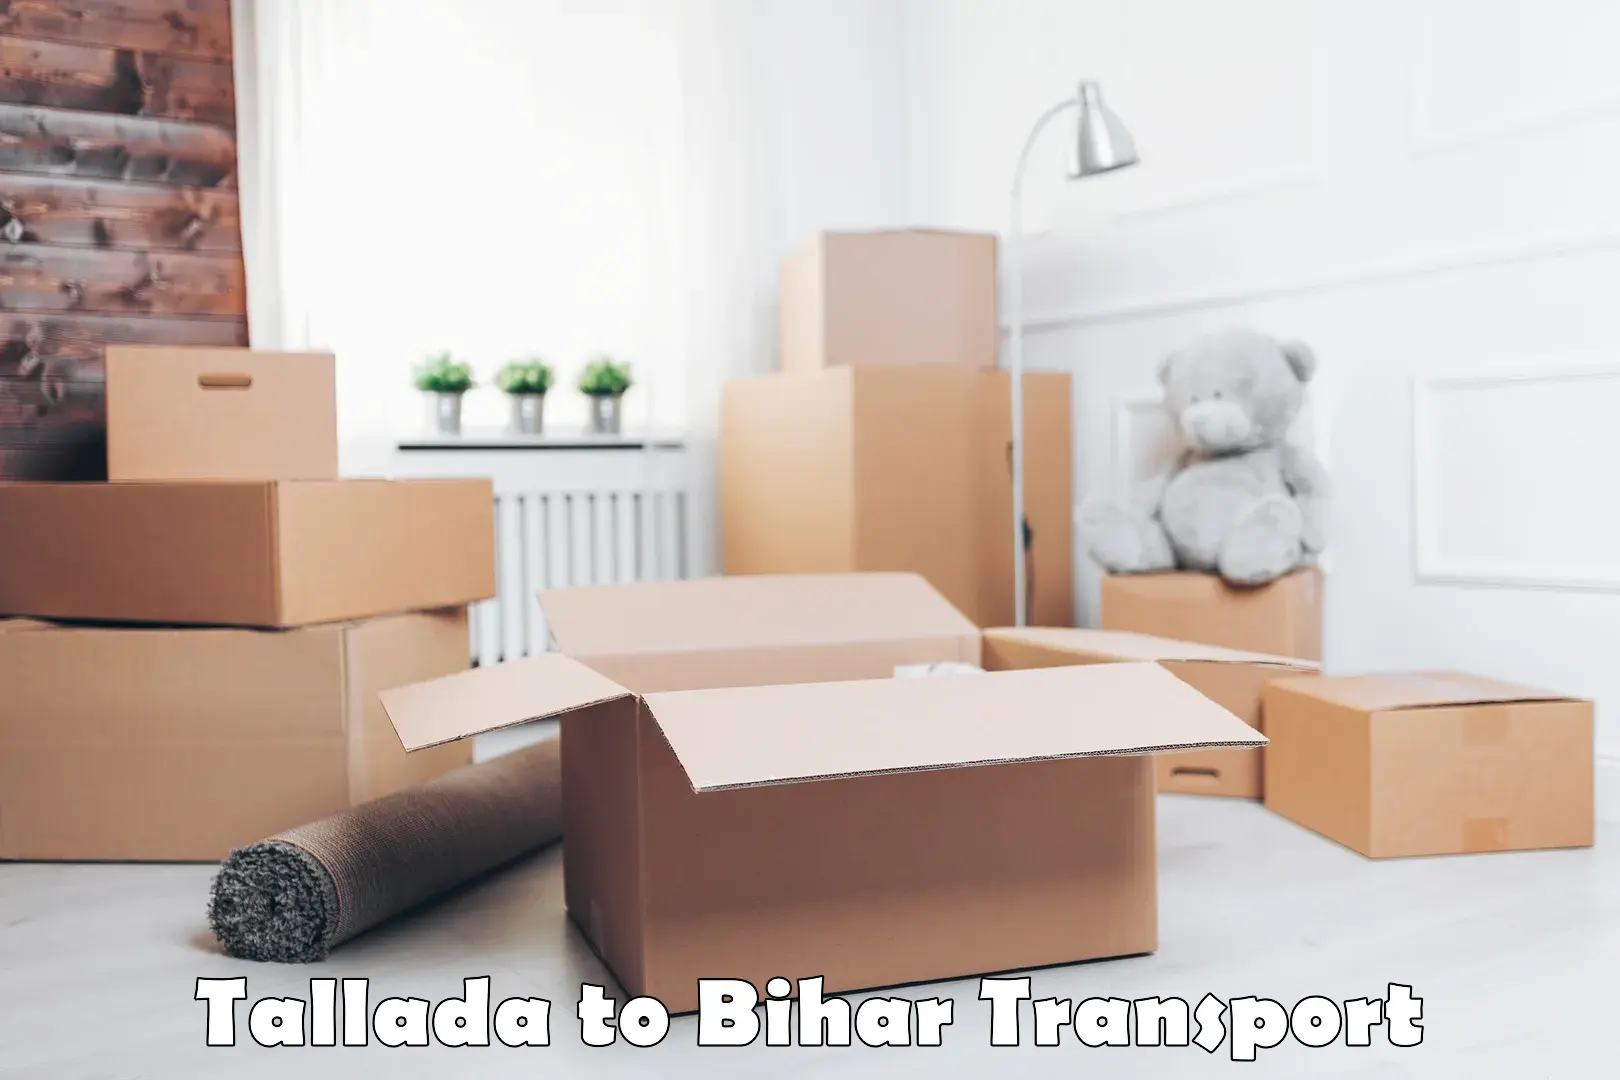 Online transport service Tallada to Birpur